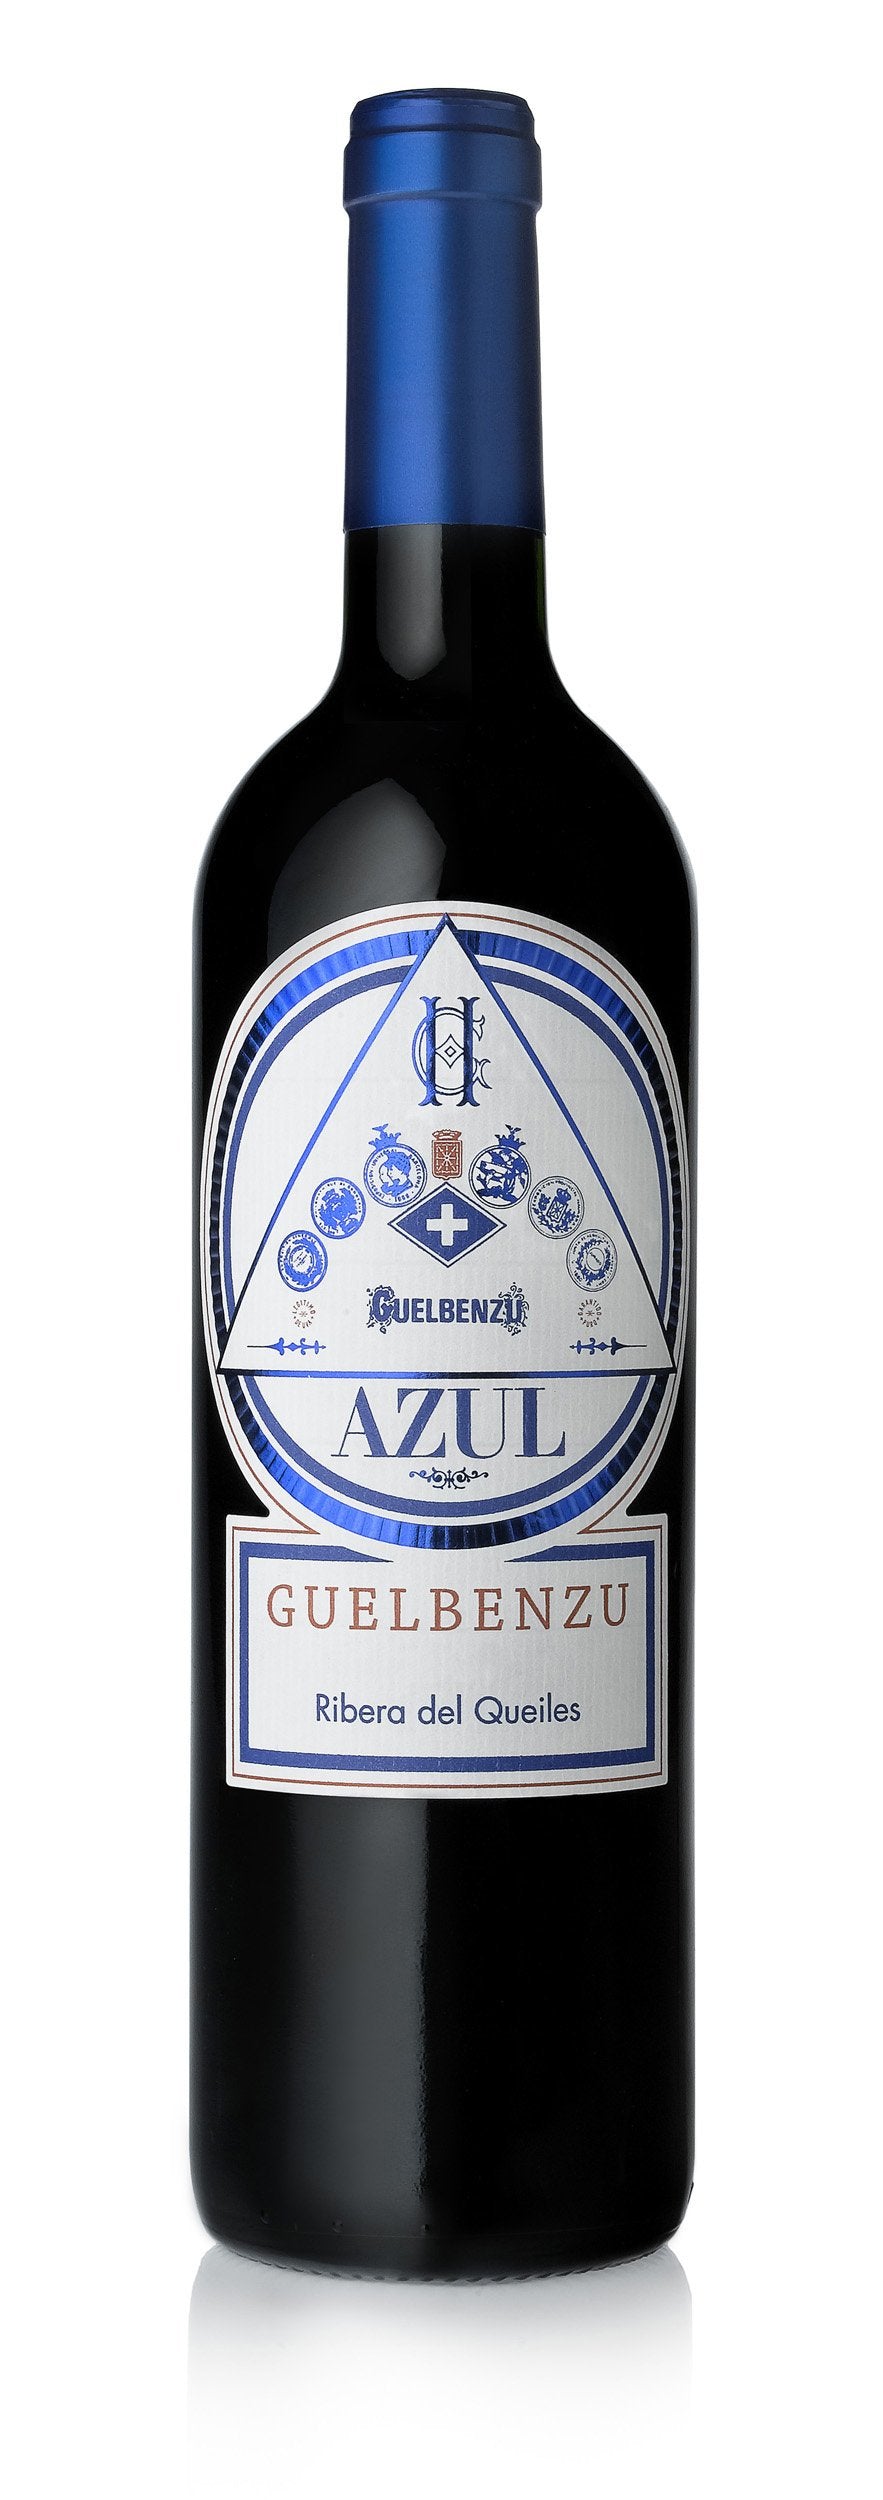 Guelbenzu Azul 2016